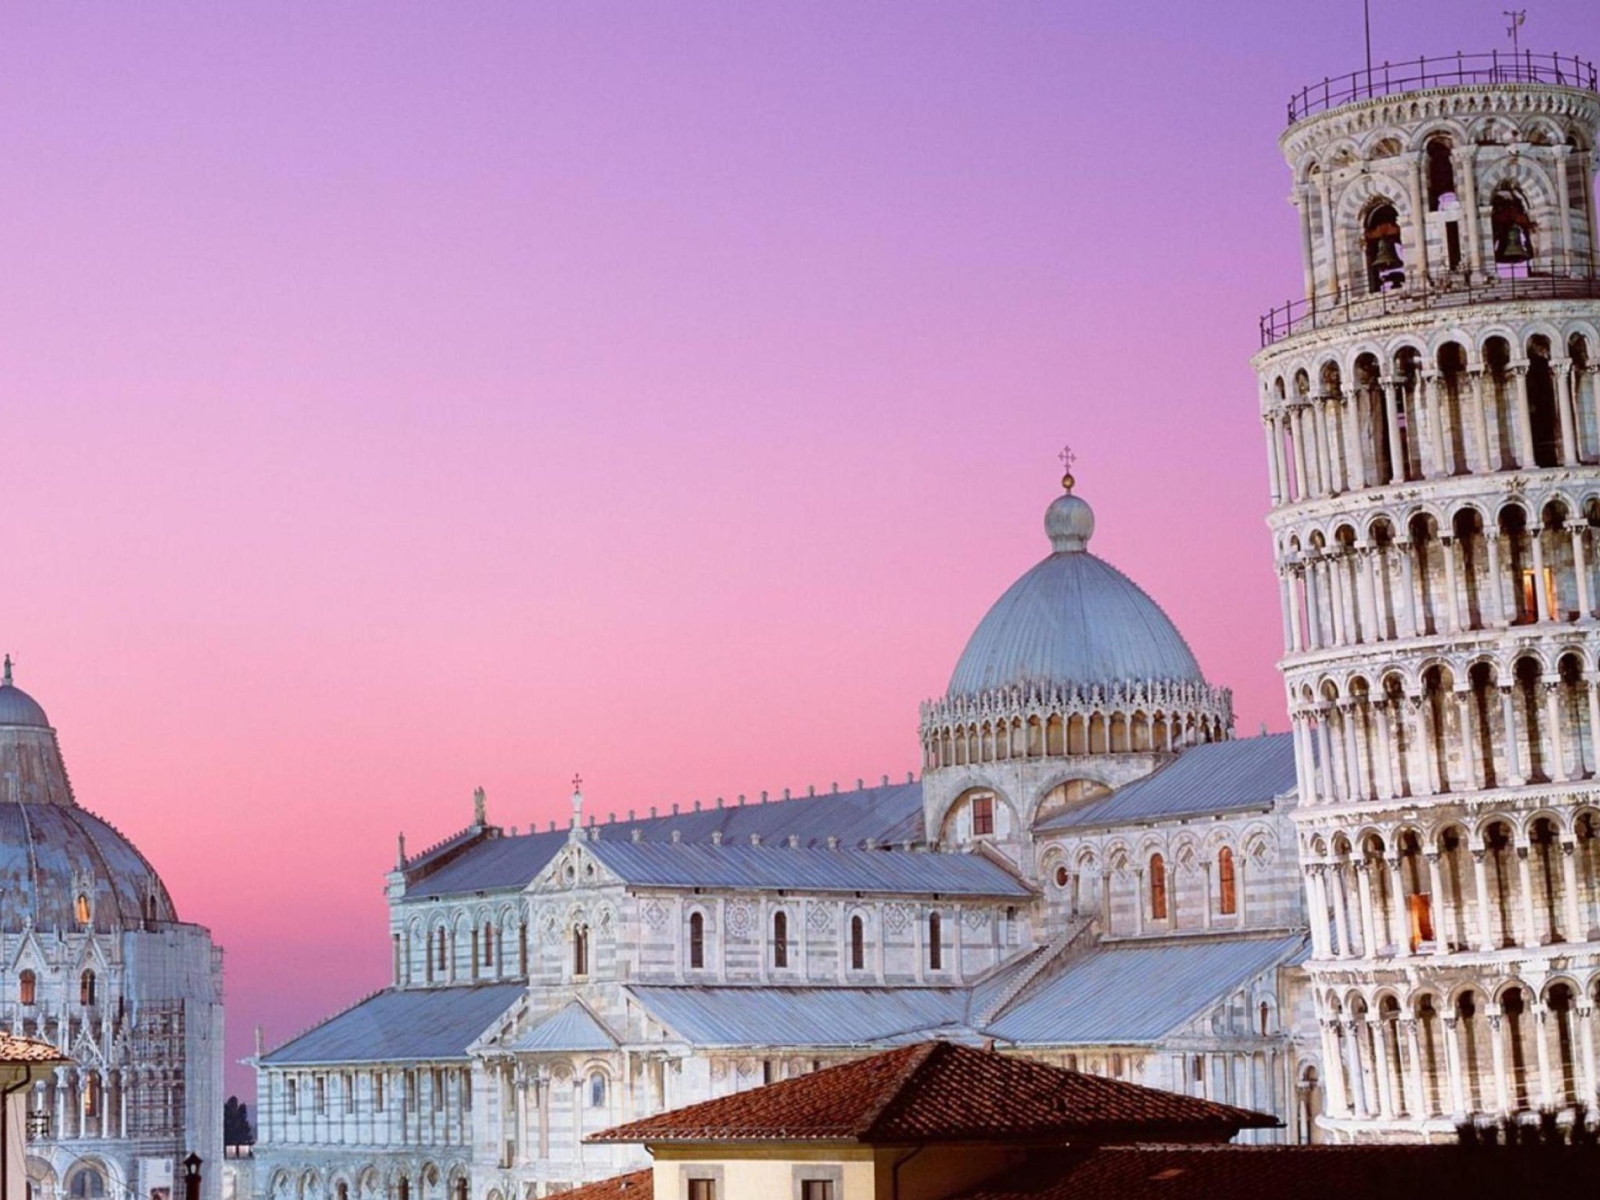 Tower of Pisa Italy screenshot #1 1600x1200